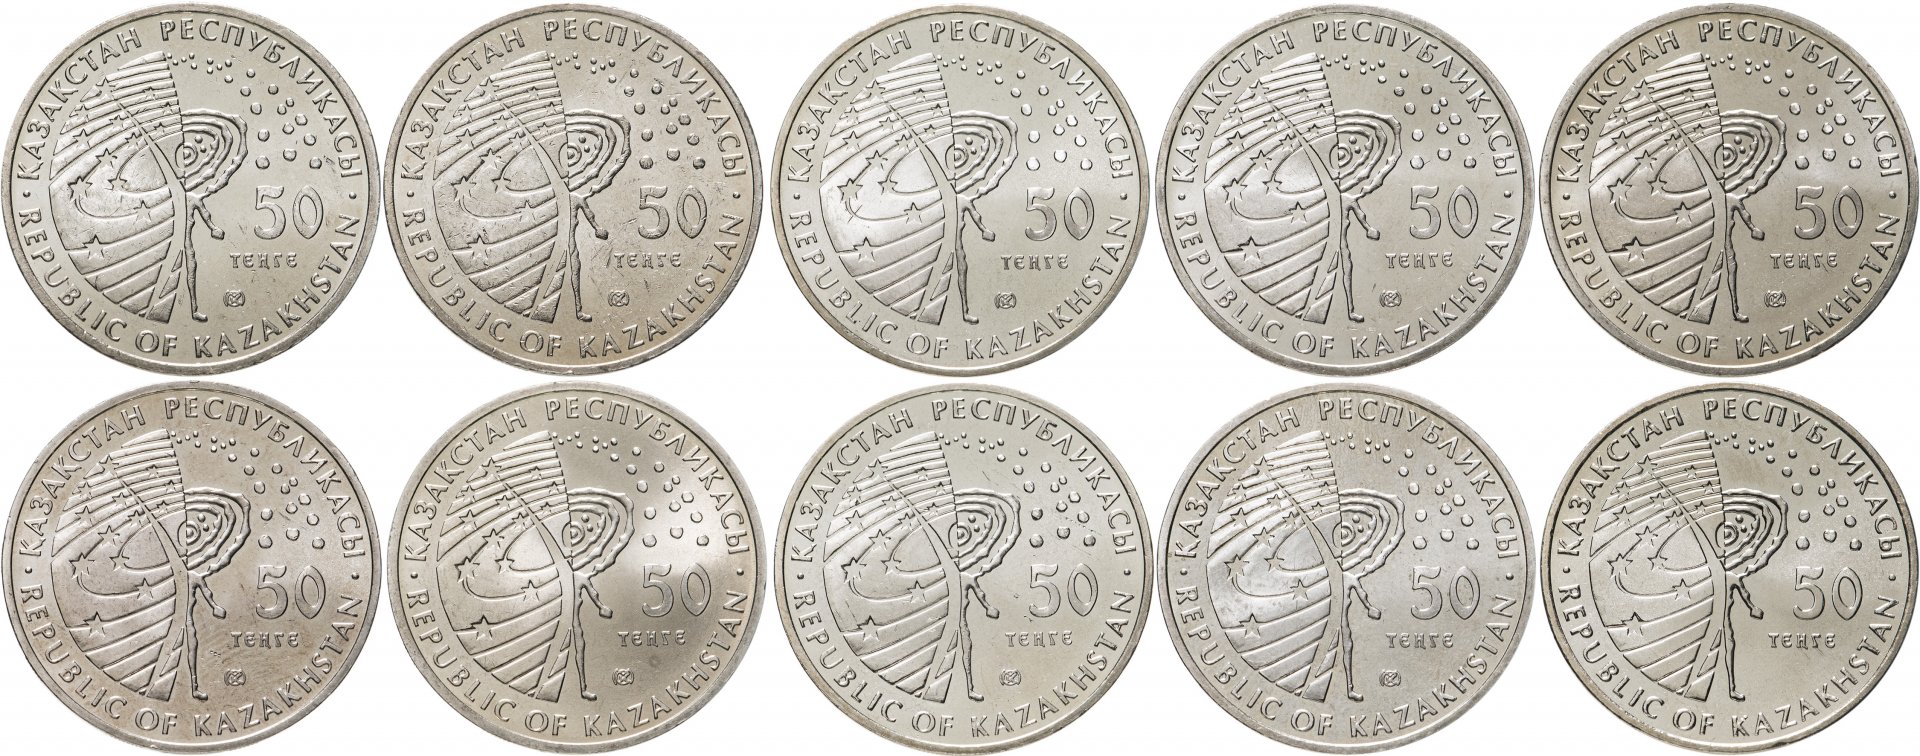 2500 тг в рублях. Казахстан - 50 тенге (2006 г.). Монеты 50 тенге 2020 года. Казахстан набор монет Сакский стиль.